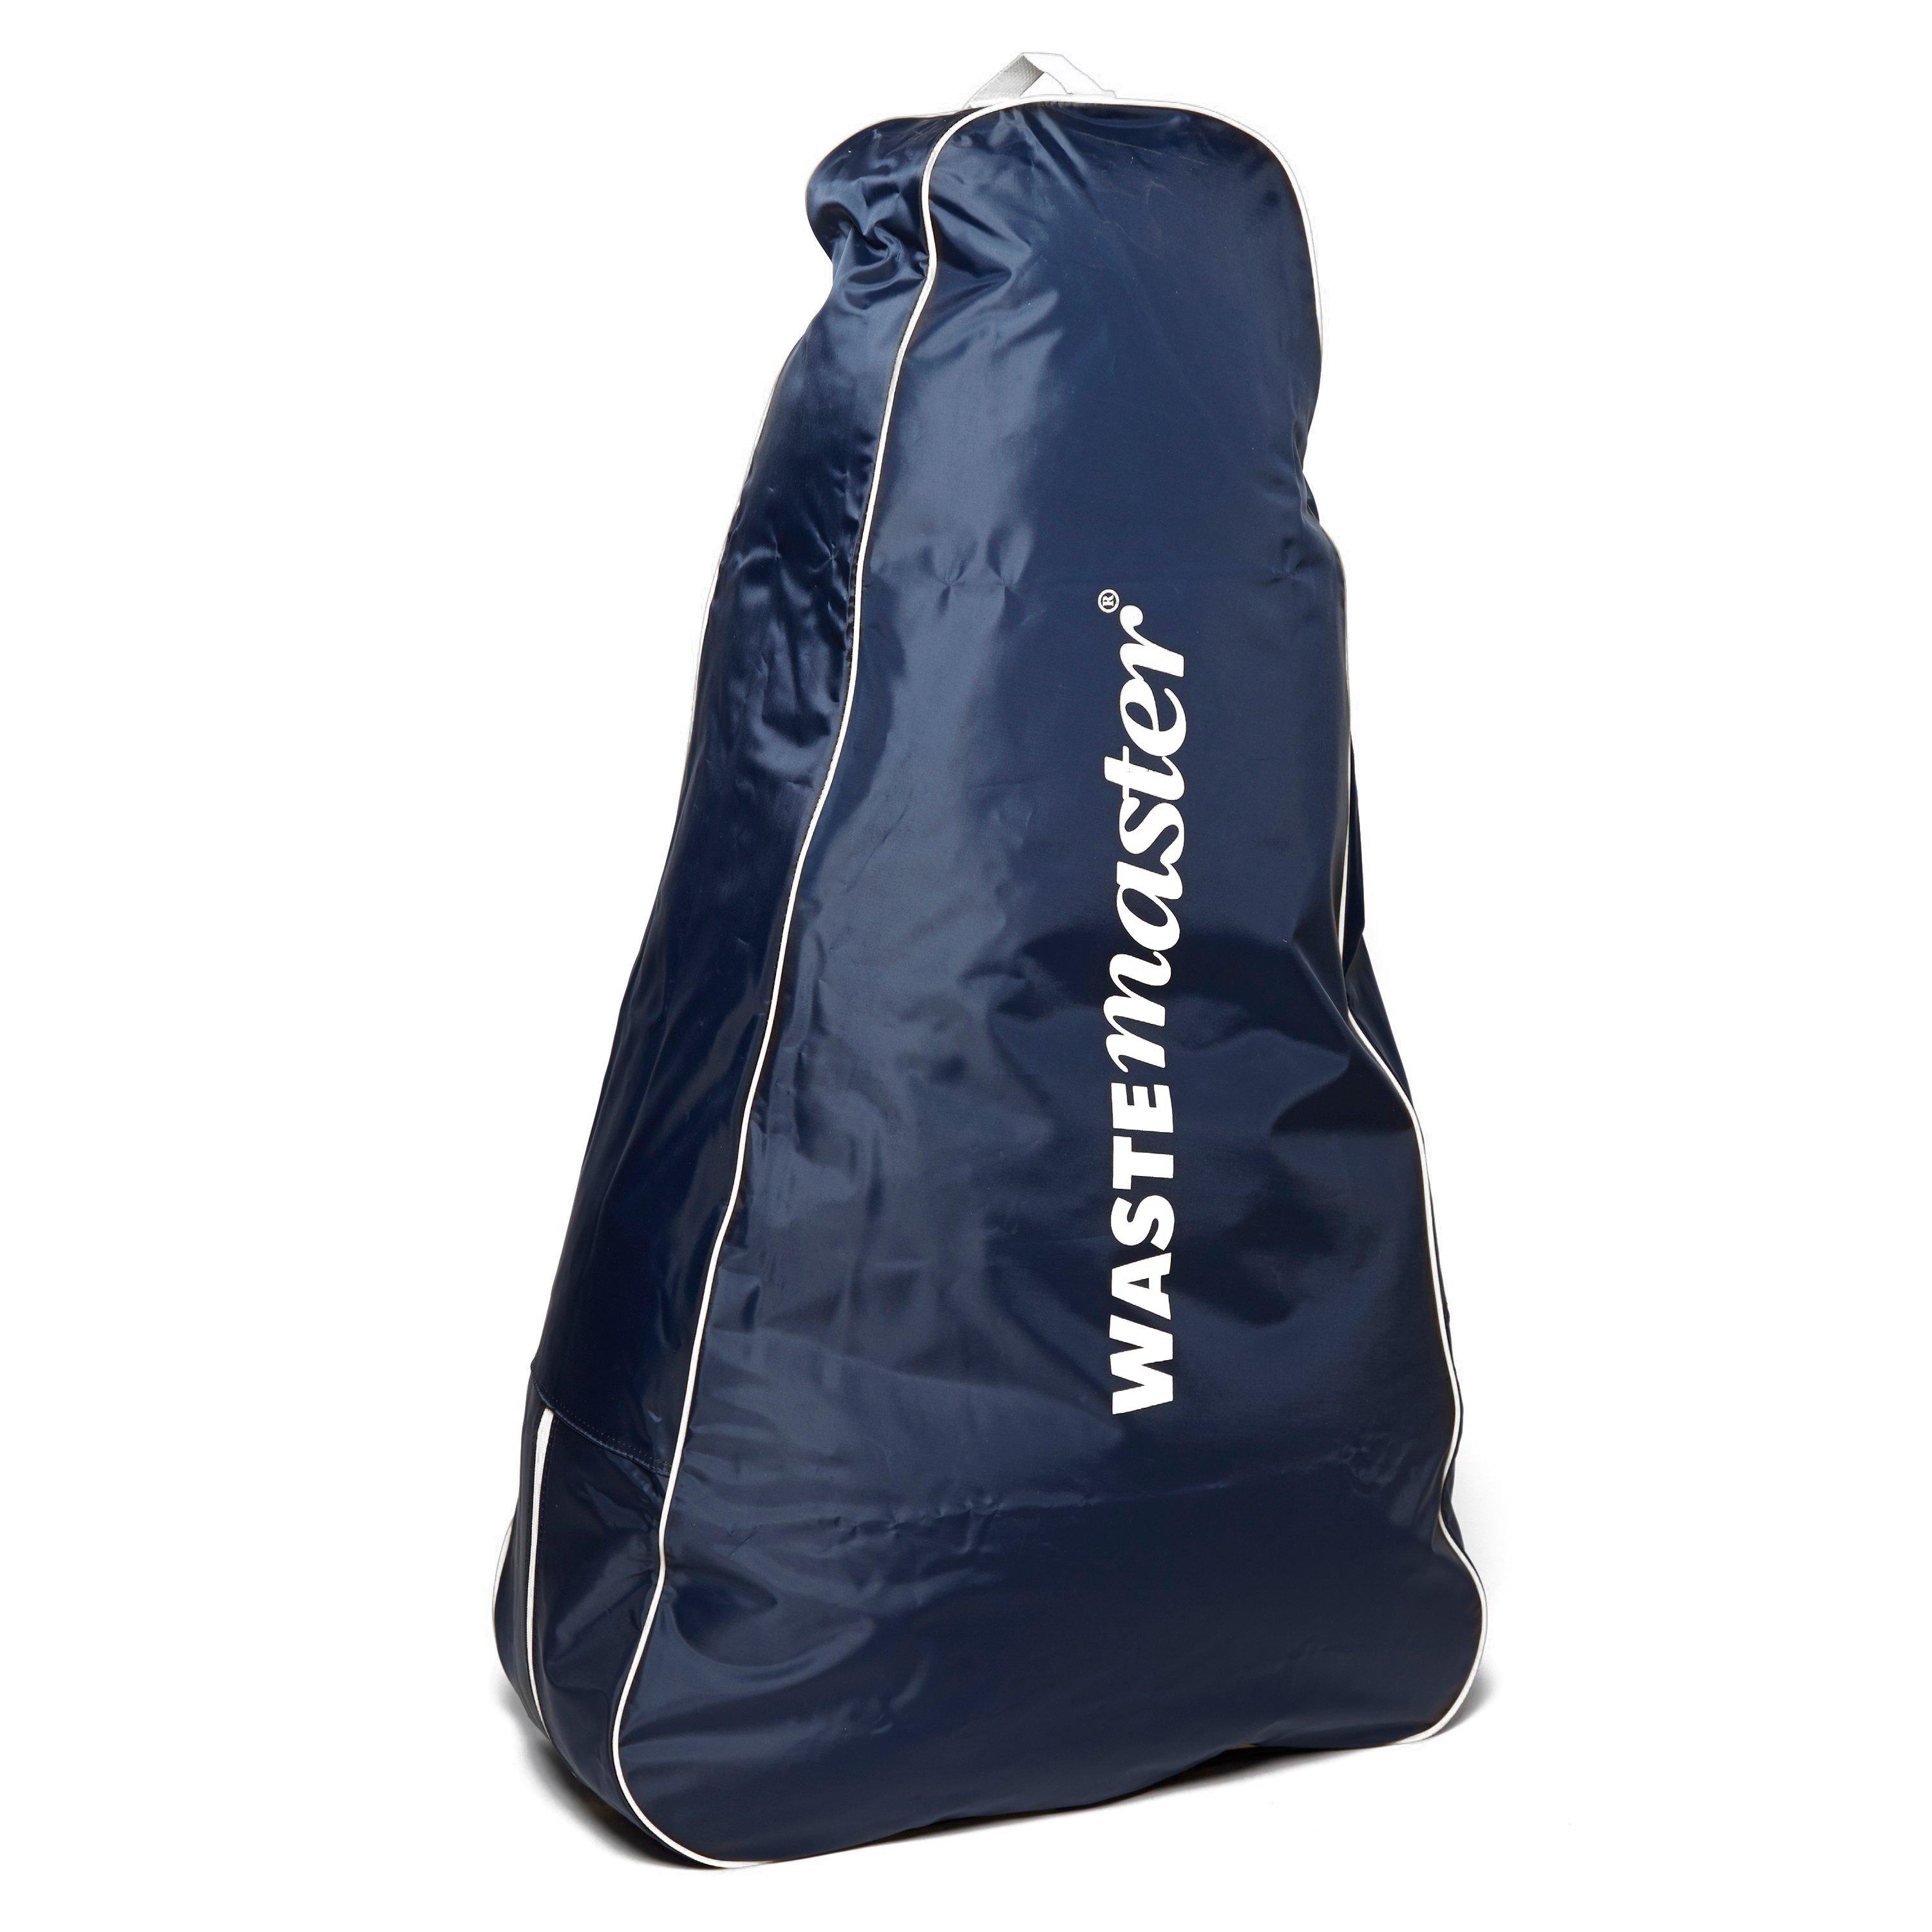 Hitchman Wastemaster Bag - Bag/bag  Bag/bag